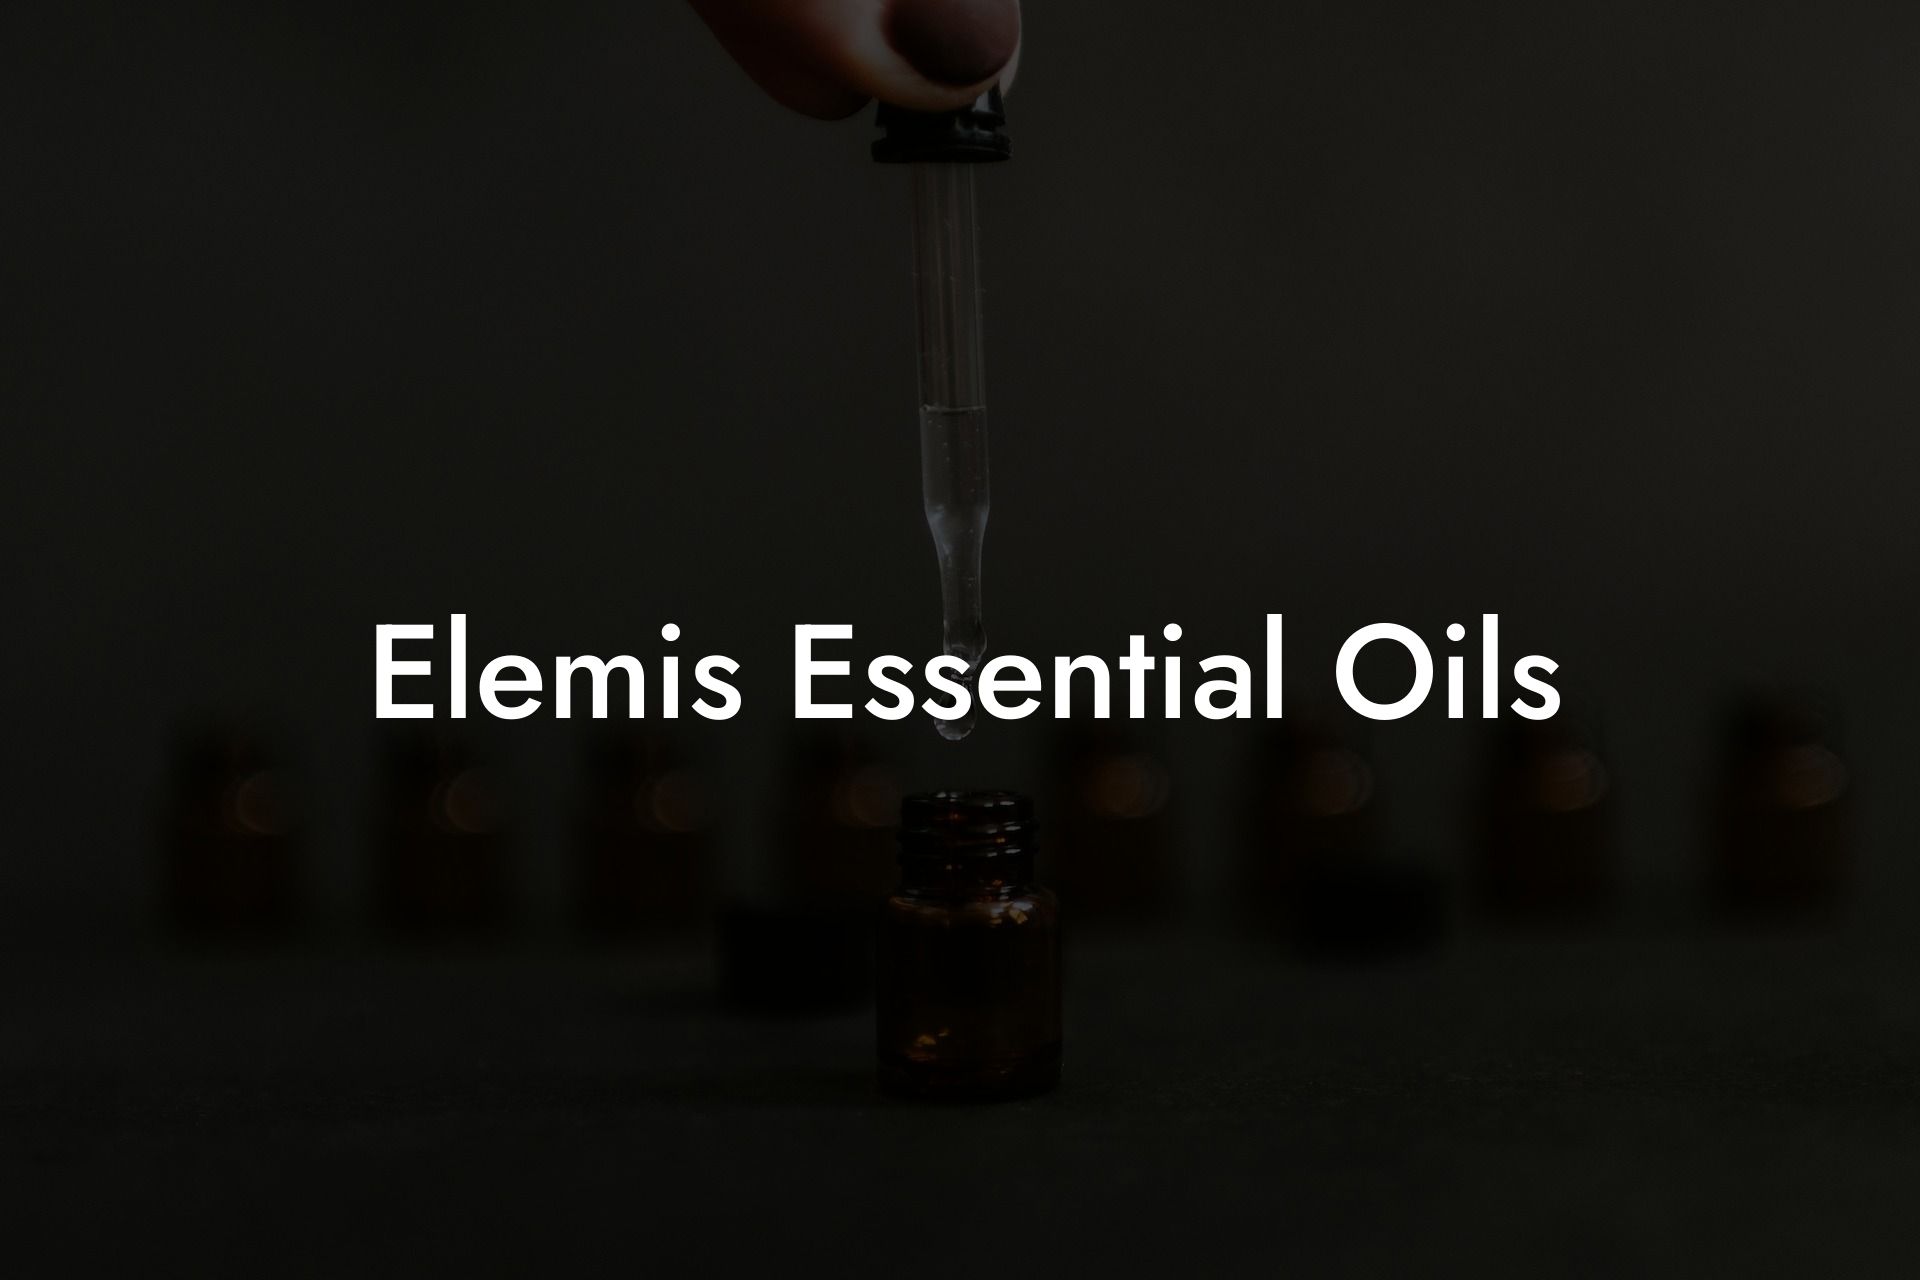 Elemis Essential Oils